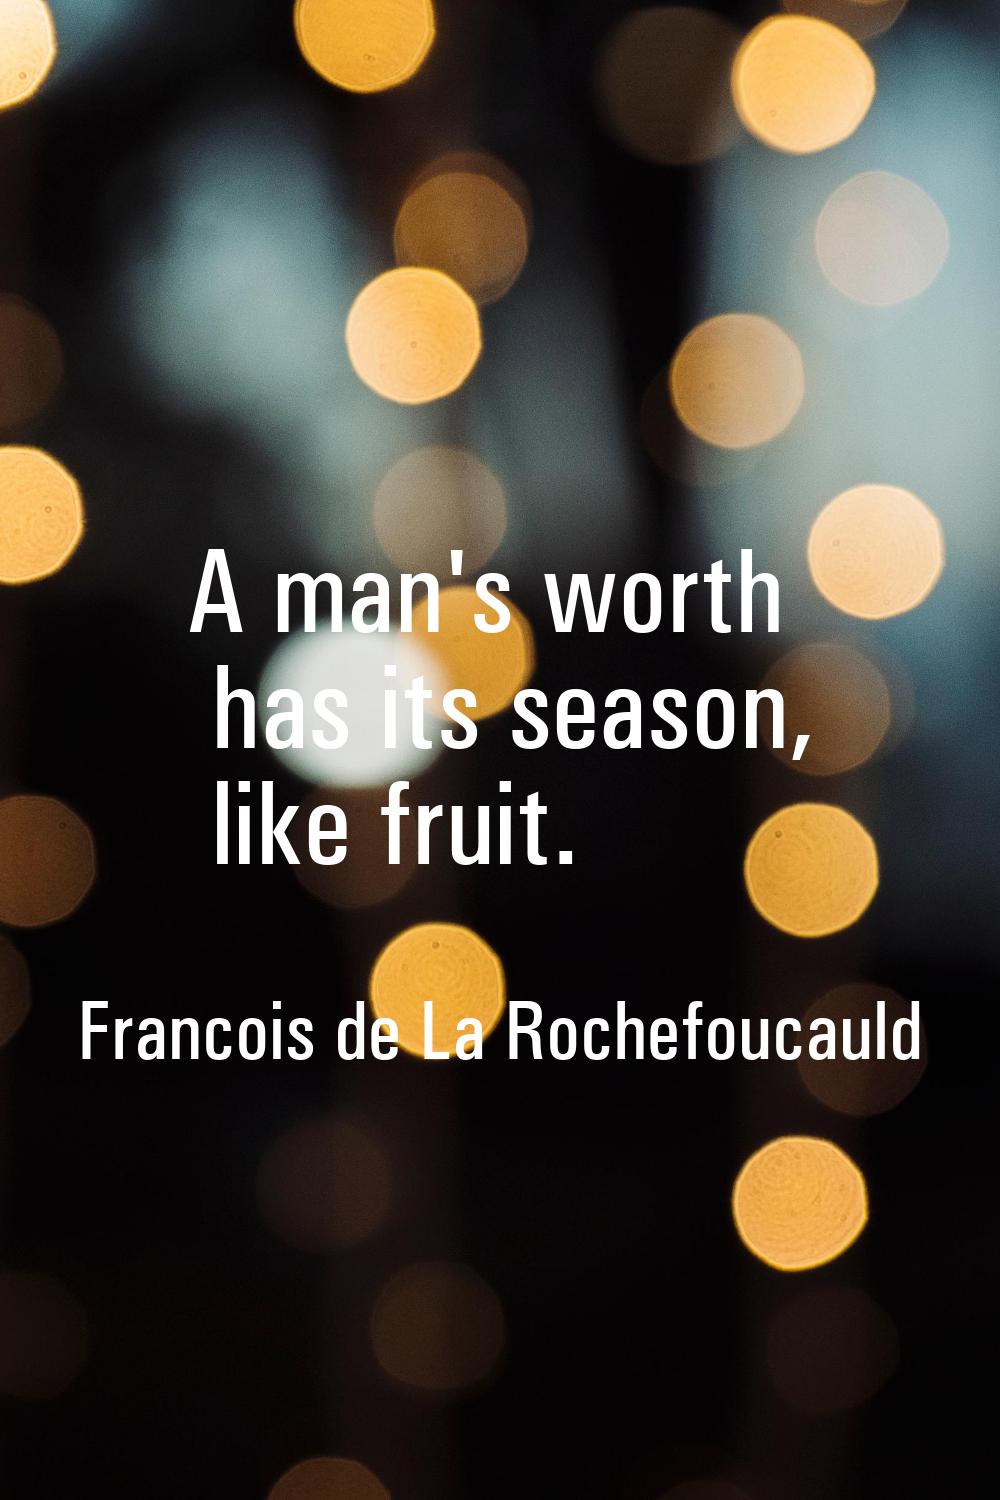 A man's worth has its season, like fruit.